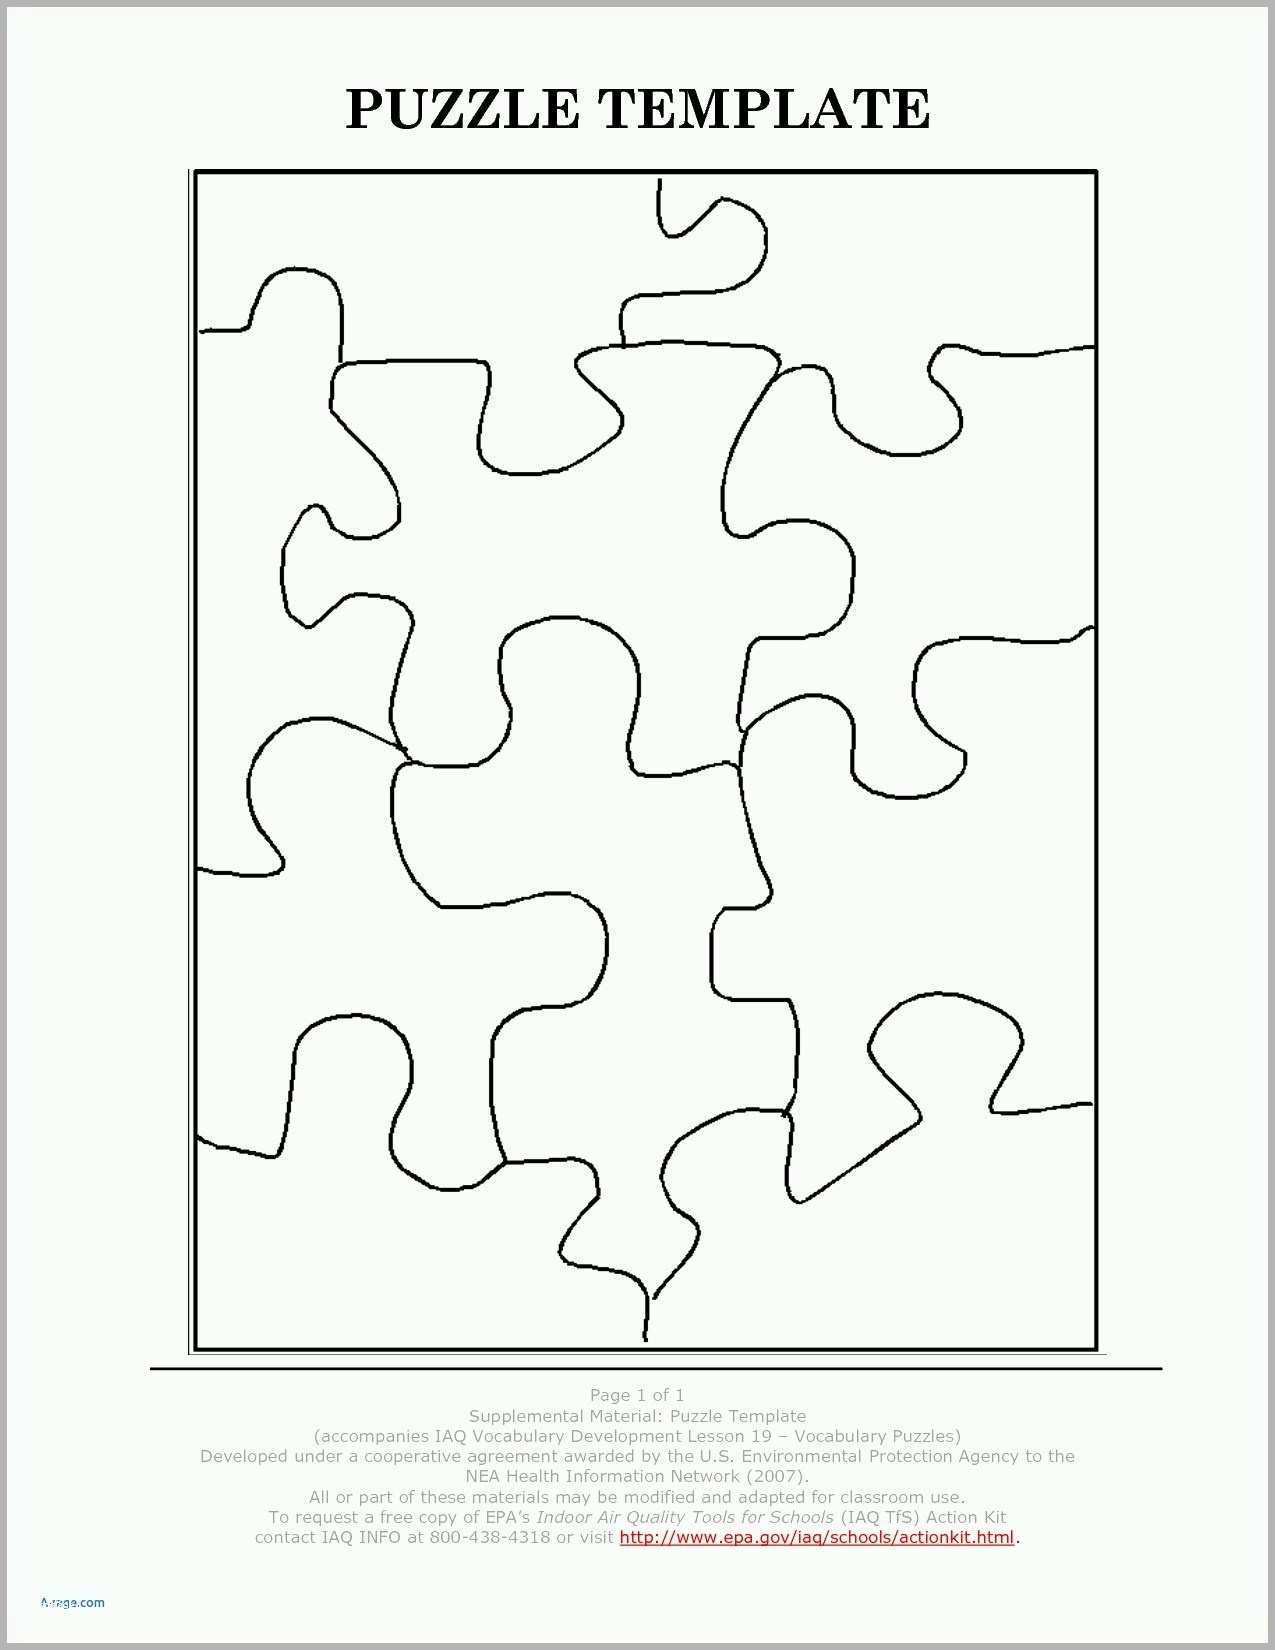 einladung puzzle vorlage erstaunliche beautiful puzzle selber machen uber puzzle selber machen vorlage